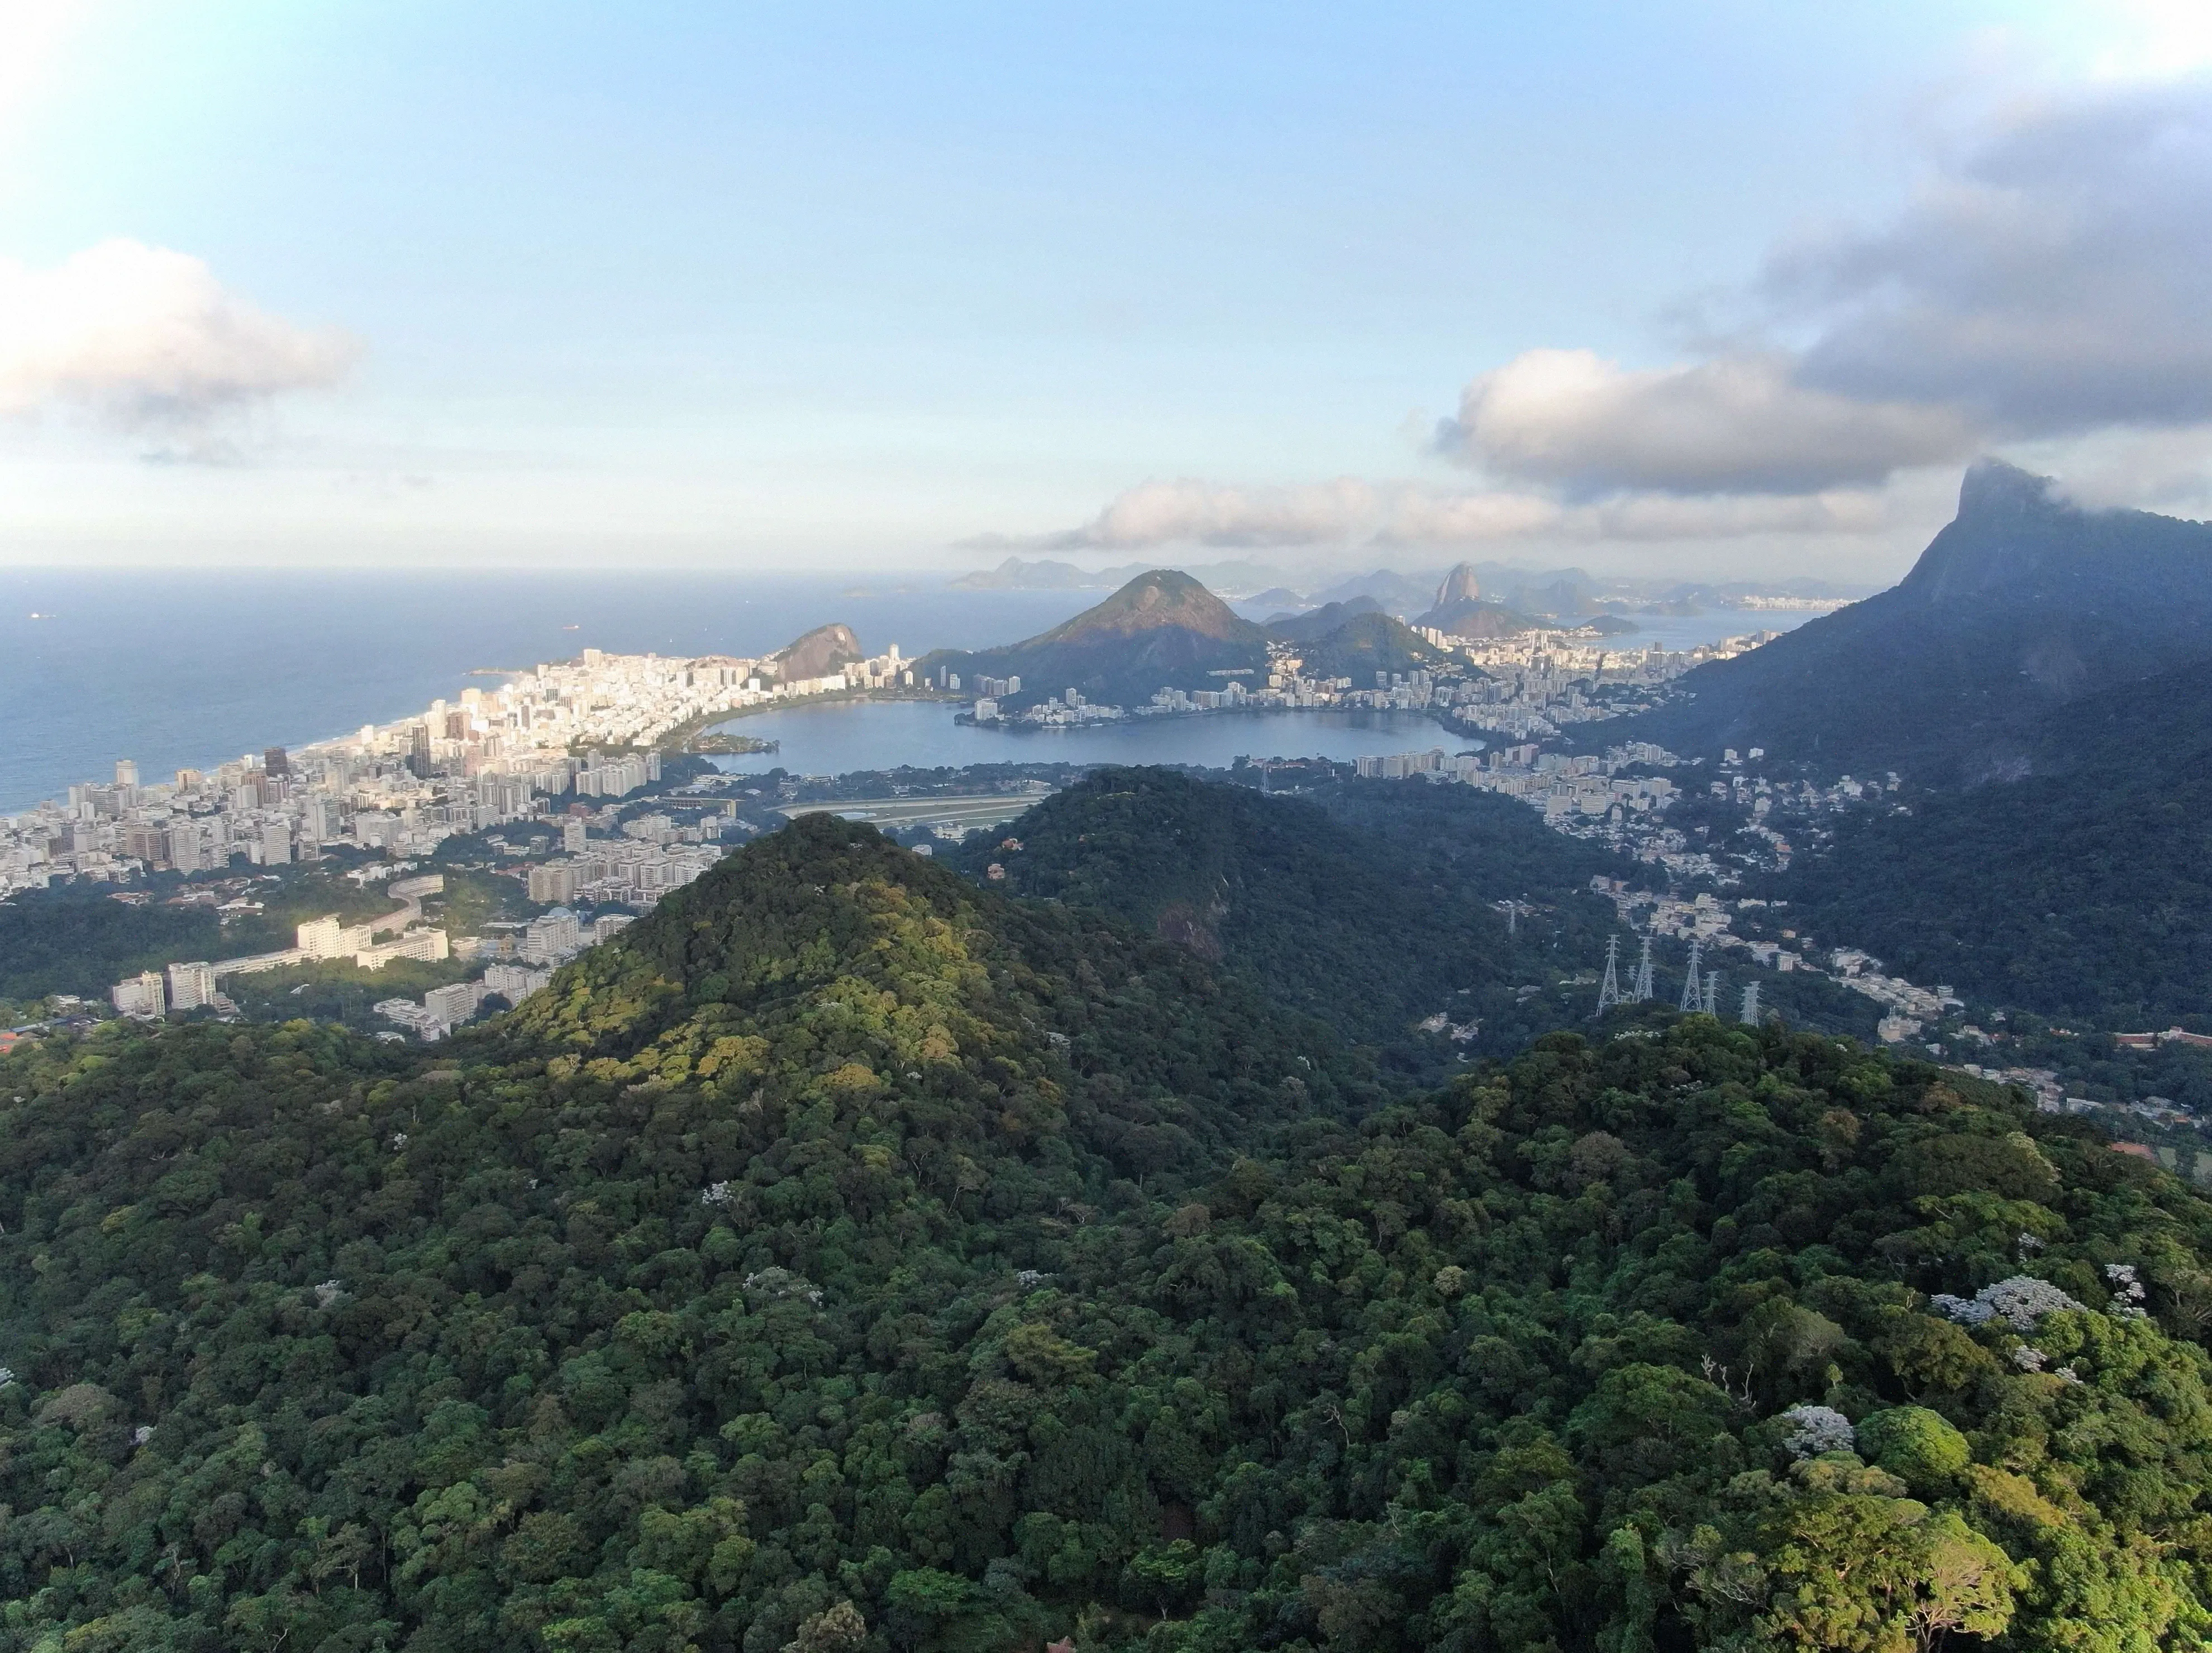 Gracias por leer esta lista definitiva de cosas para hacer en Río de Janeiro.